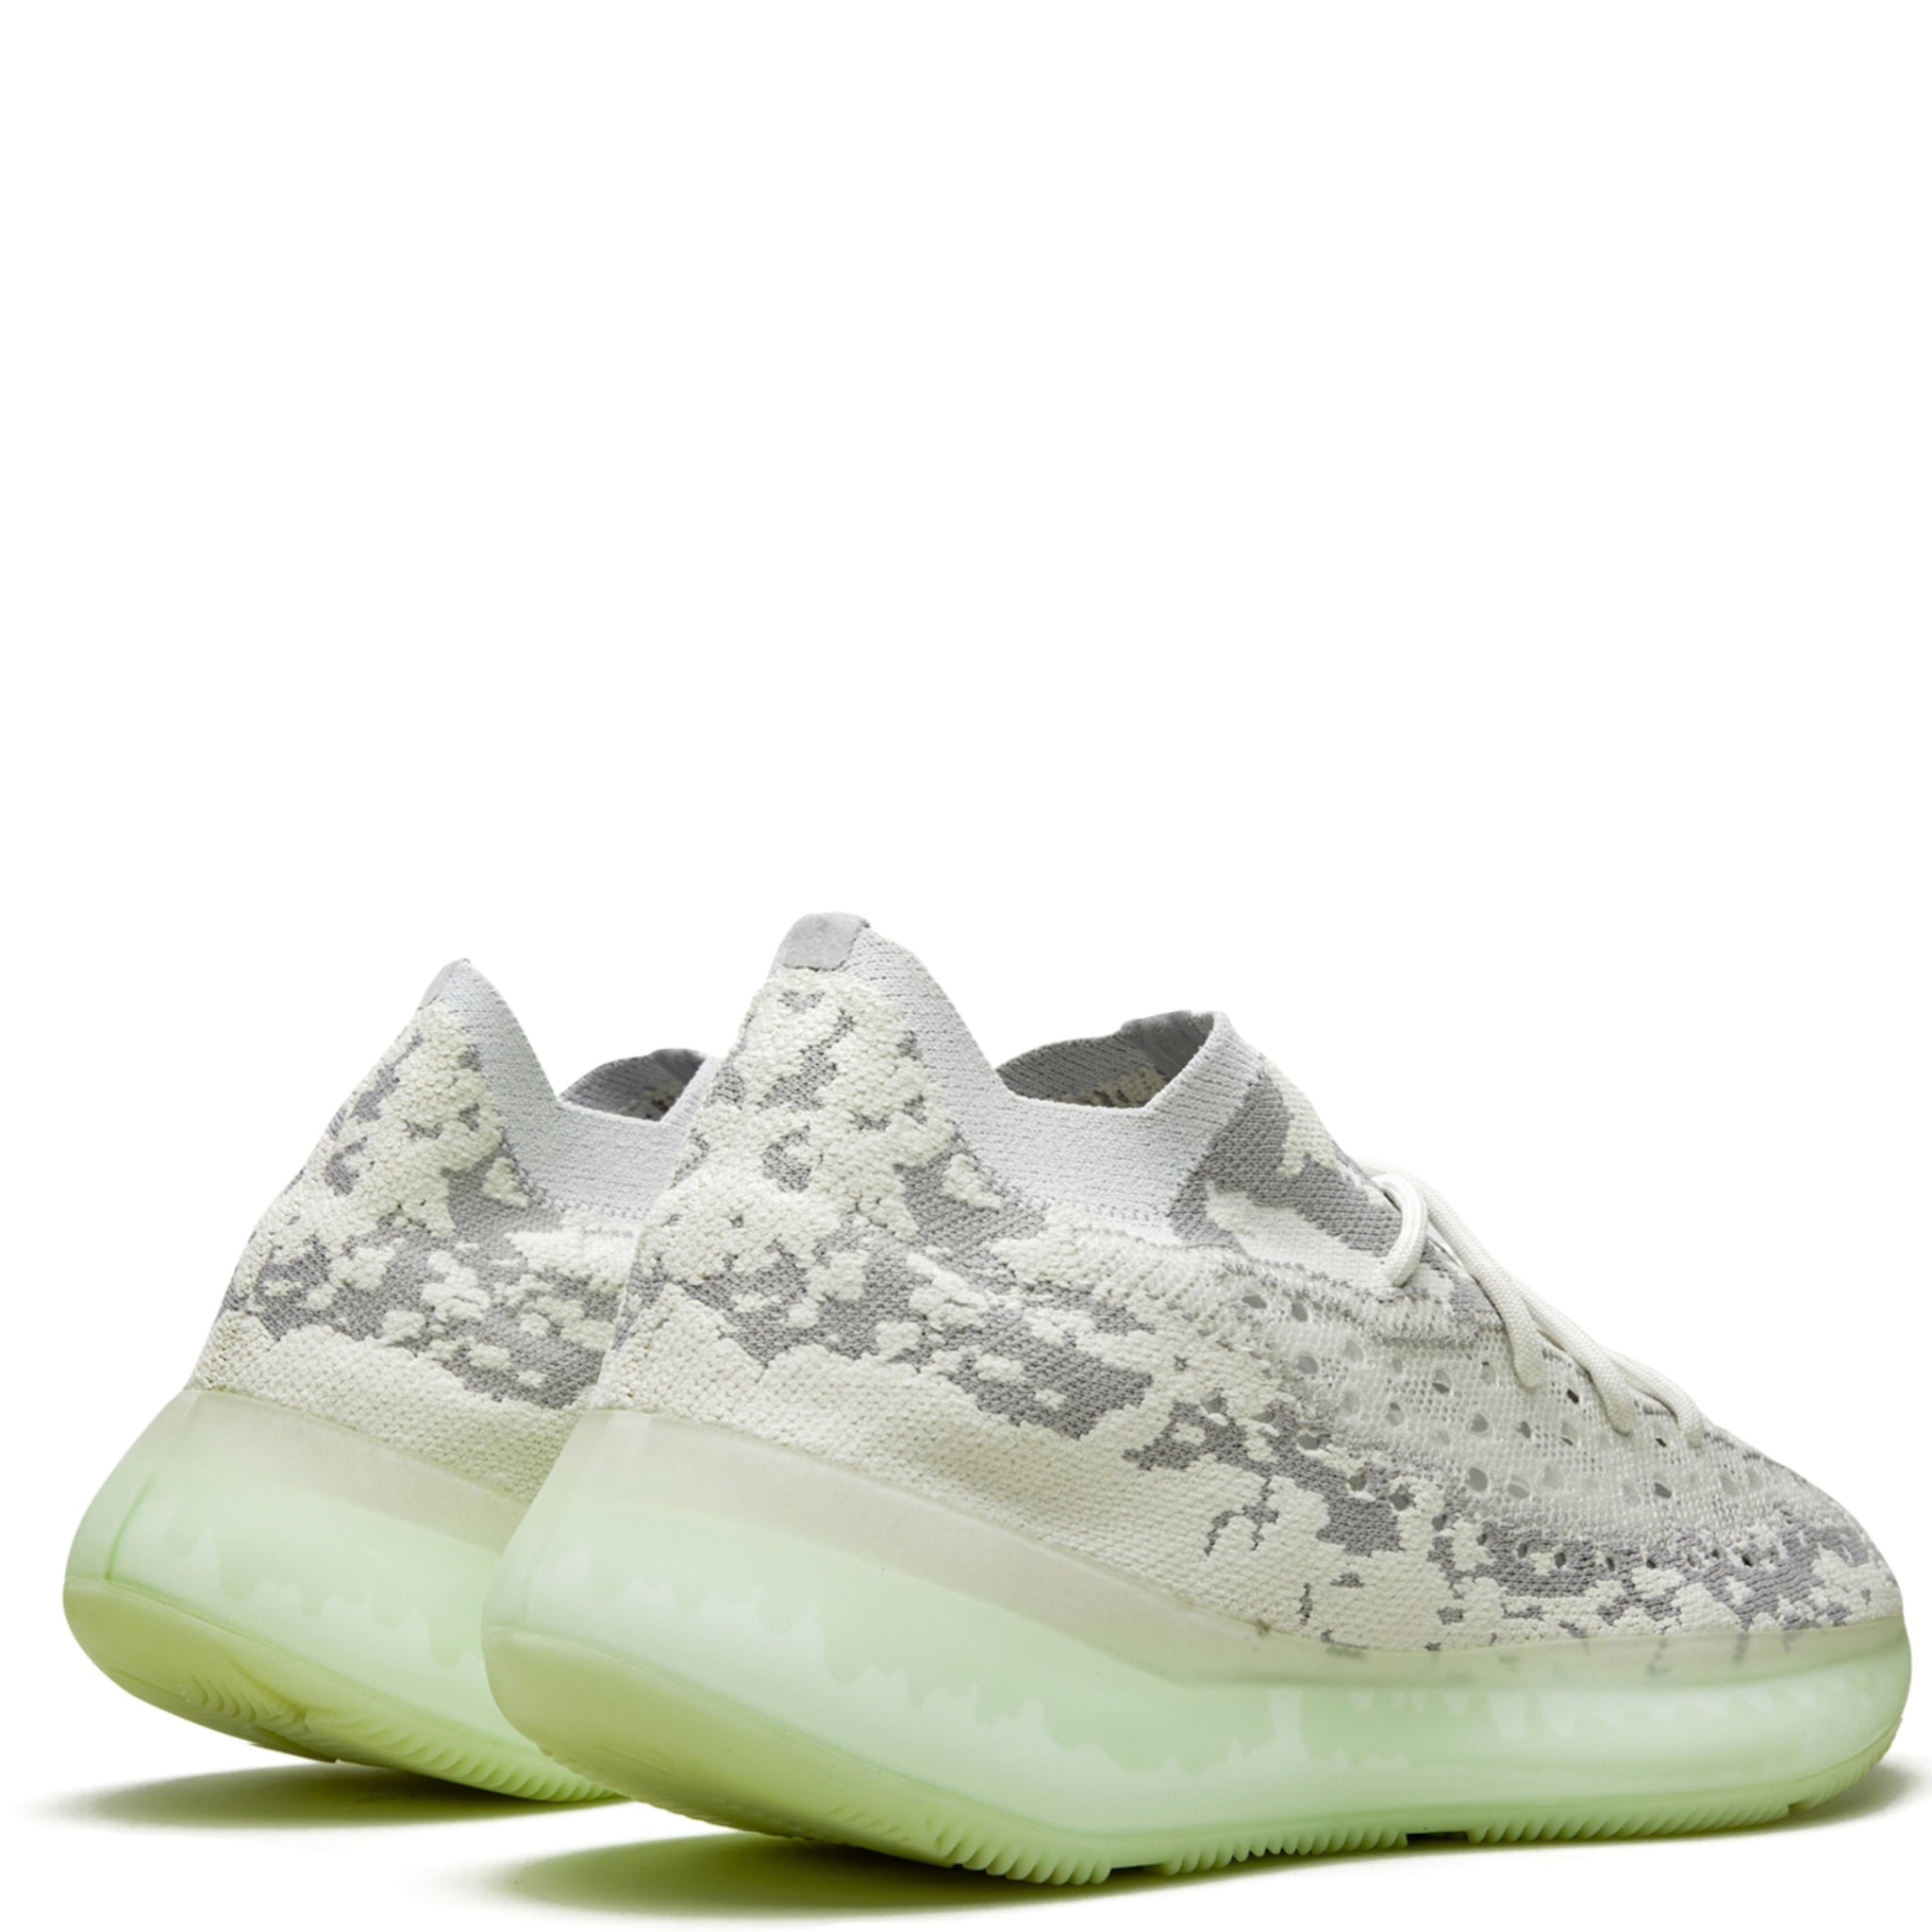 Adidas Yeezy Boost Alien Sneaker